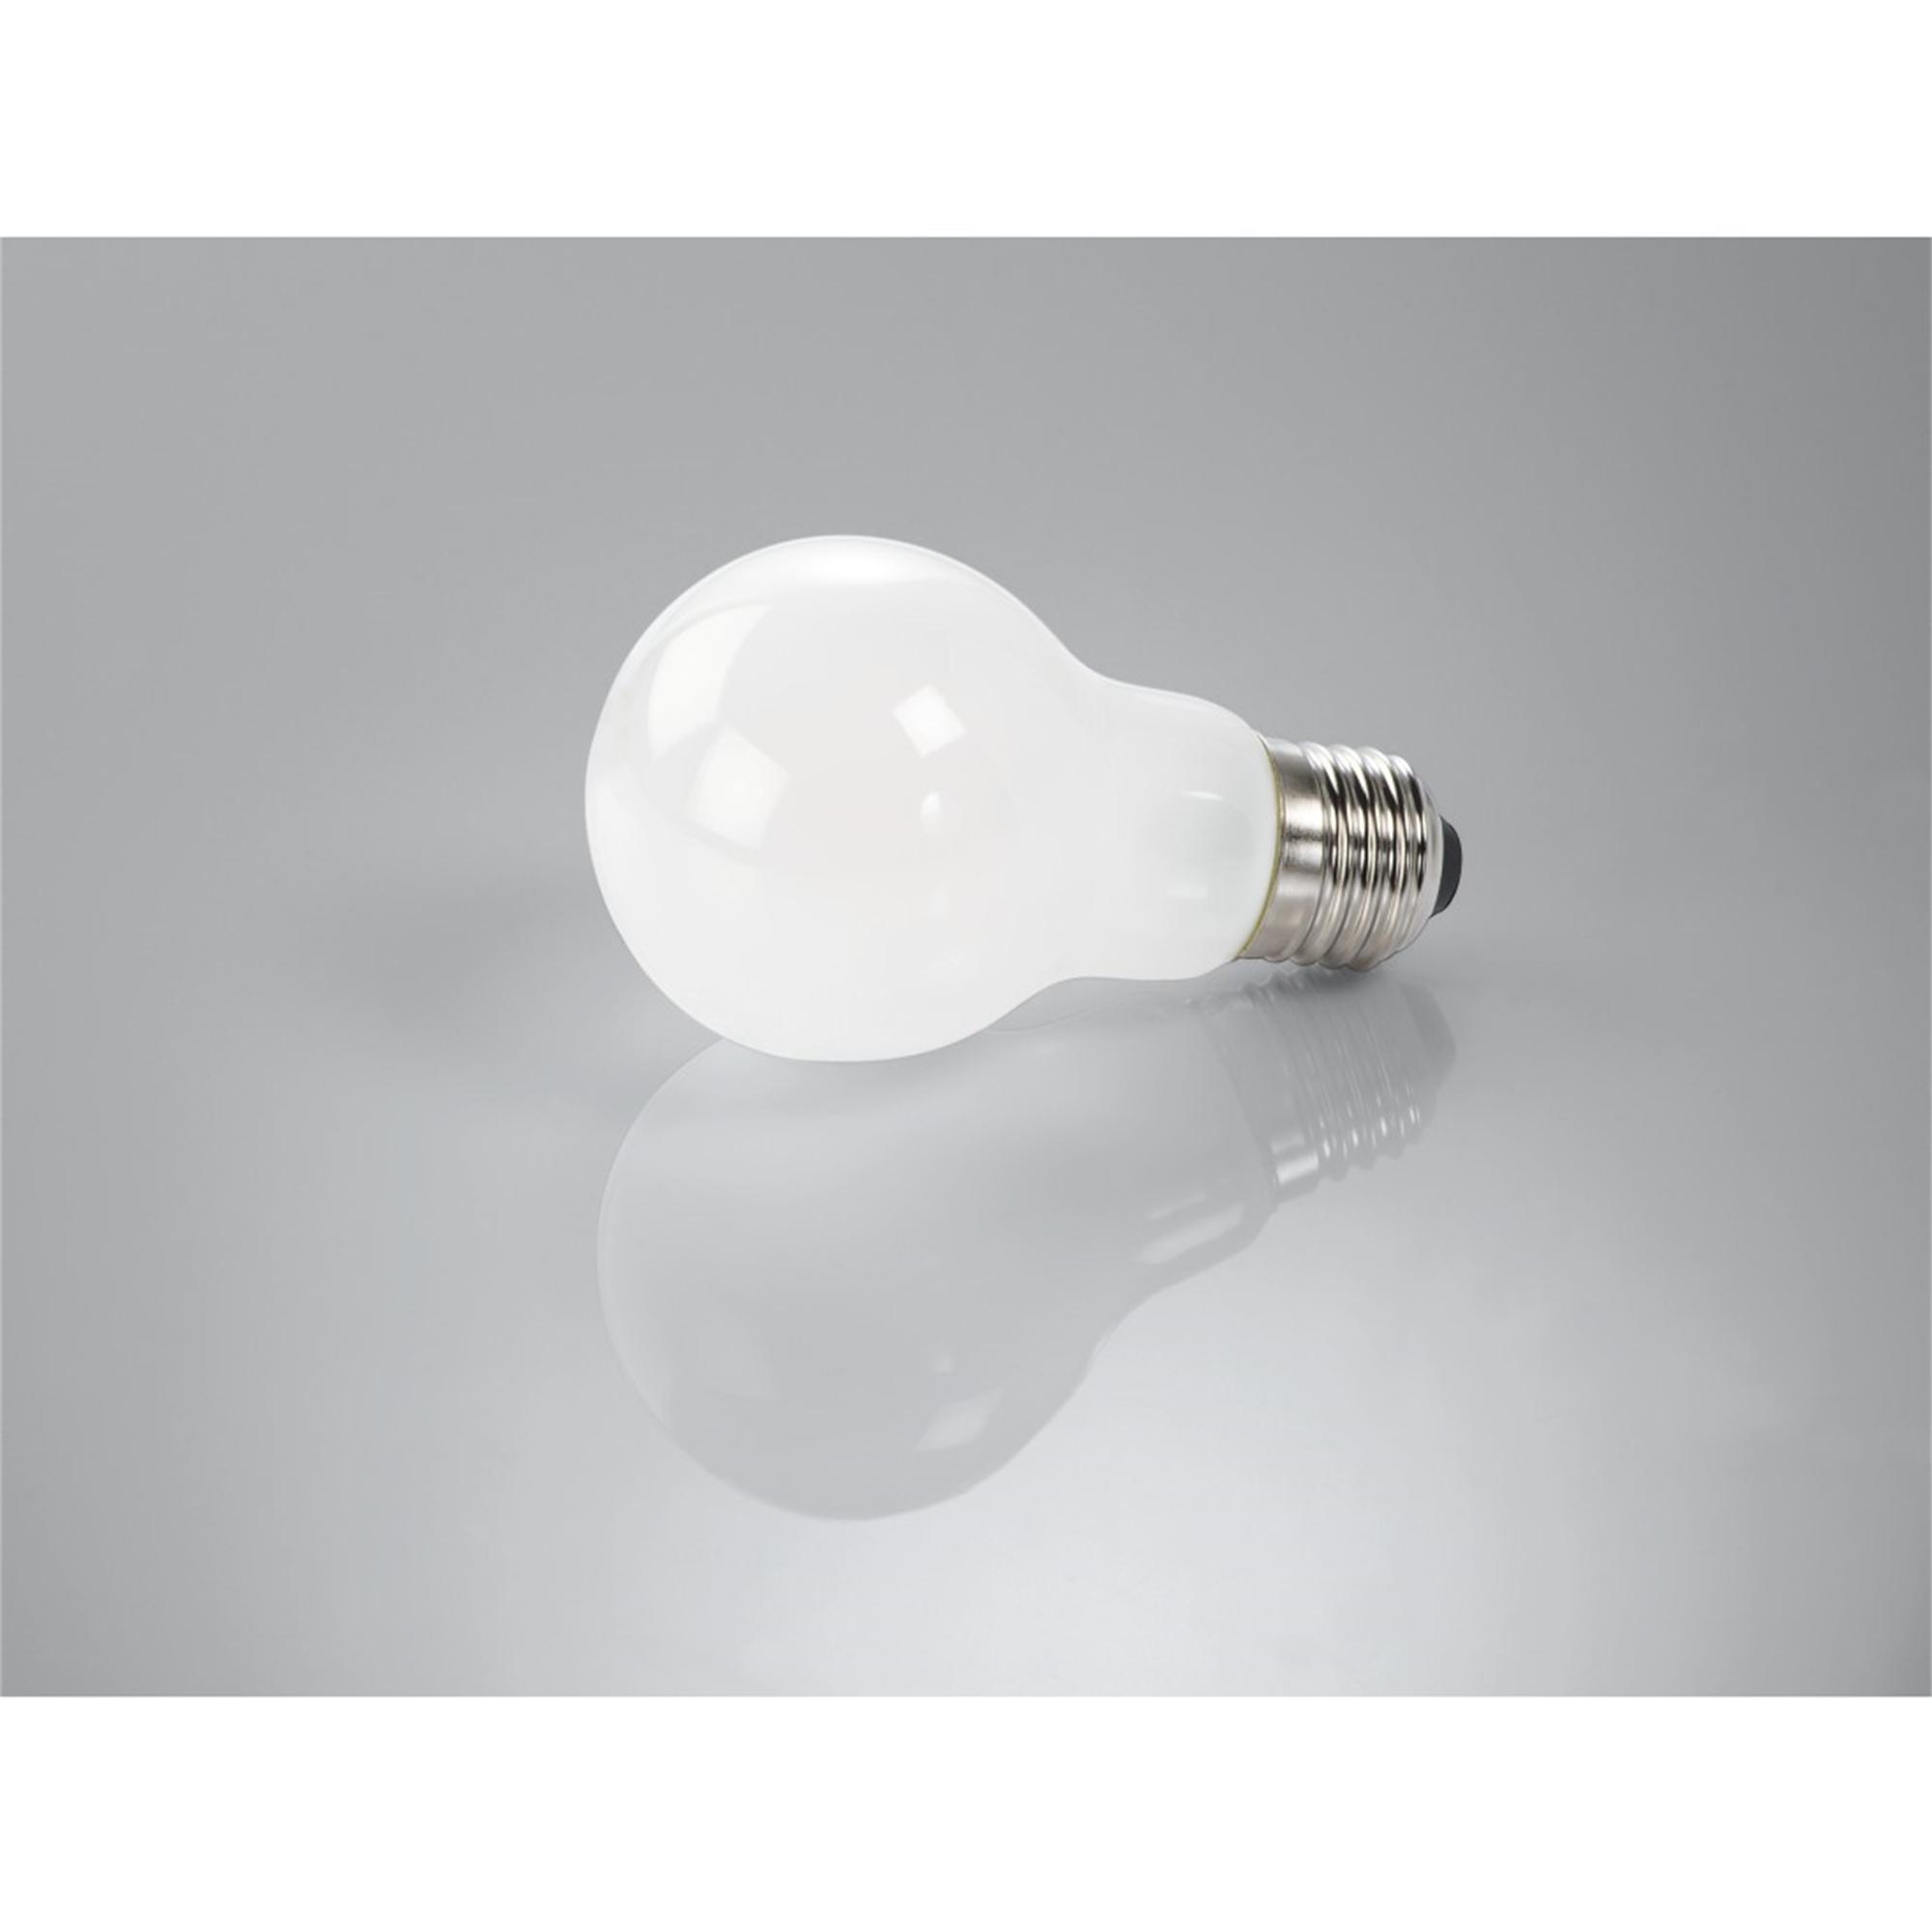 XAVAX E27, 806lm ersetzt 60W Warmweiß E27 LED-Lampe